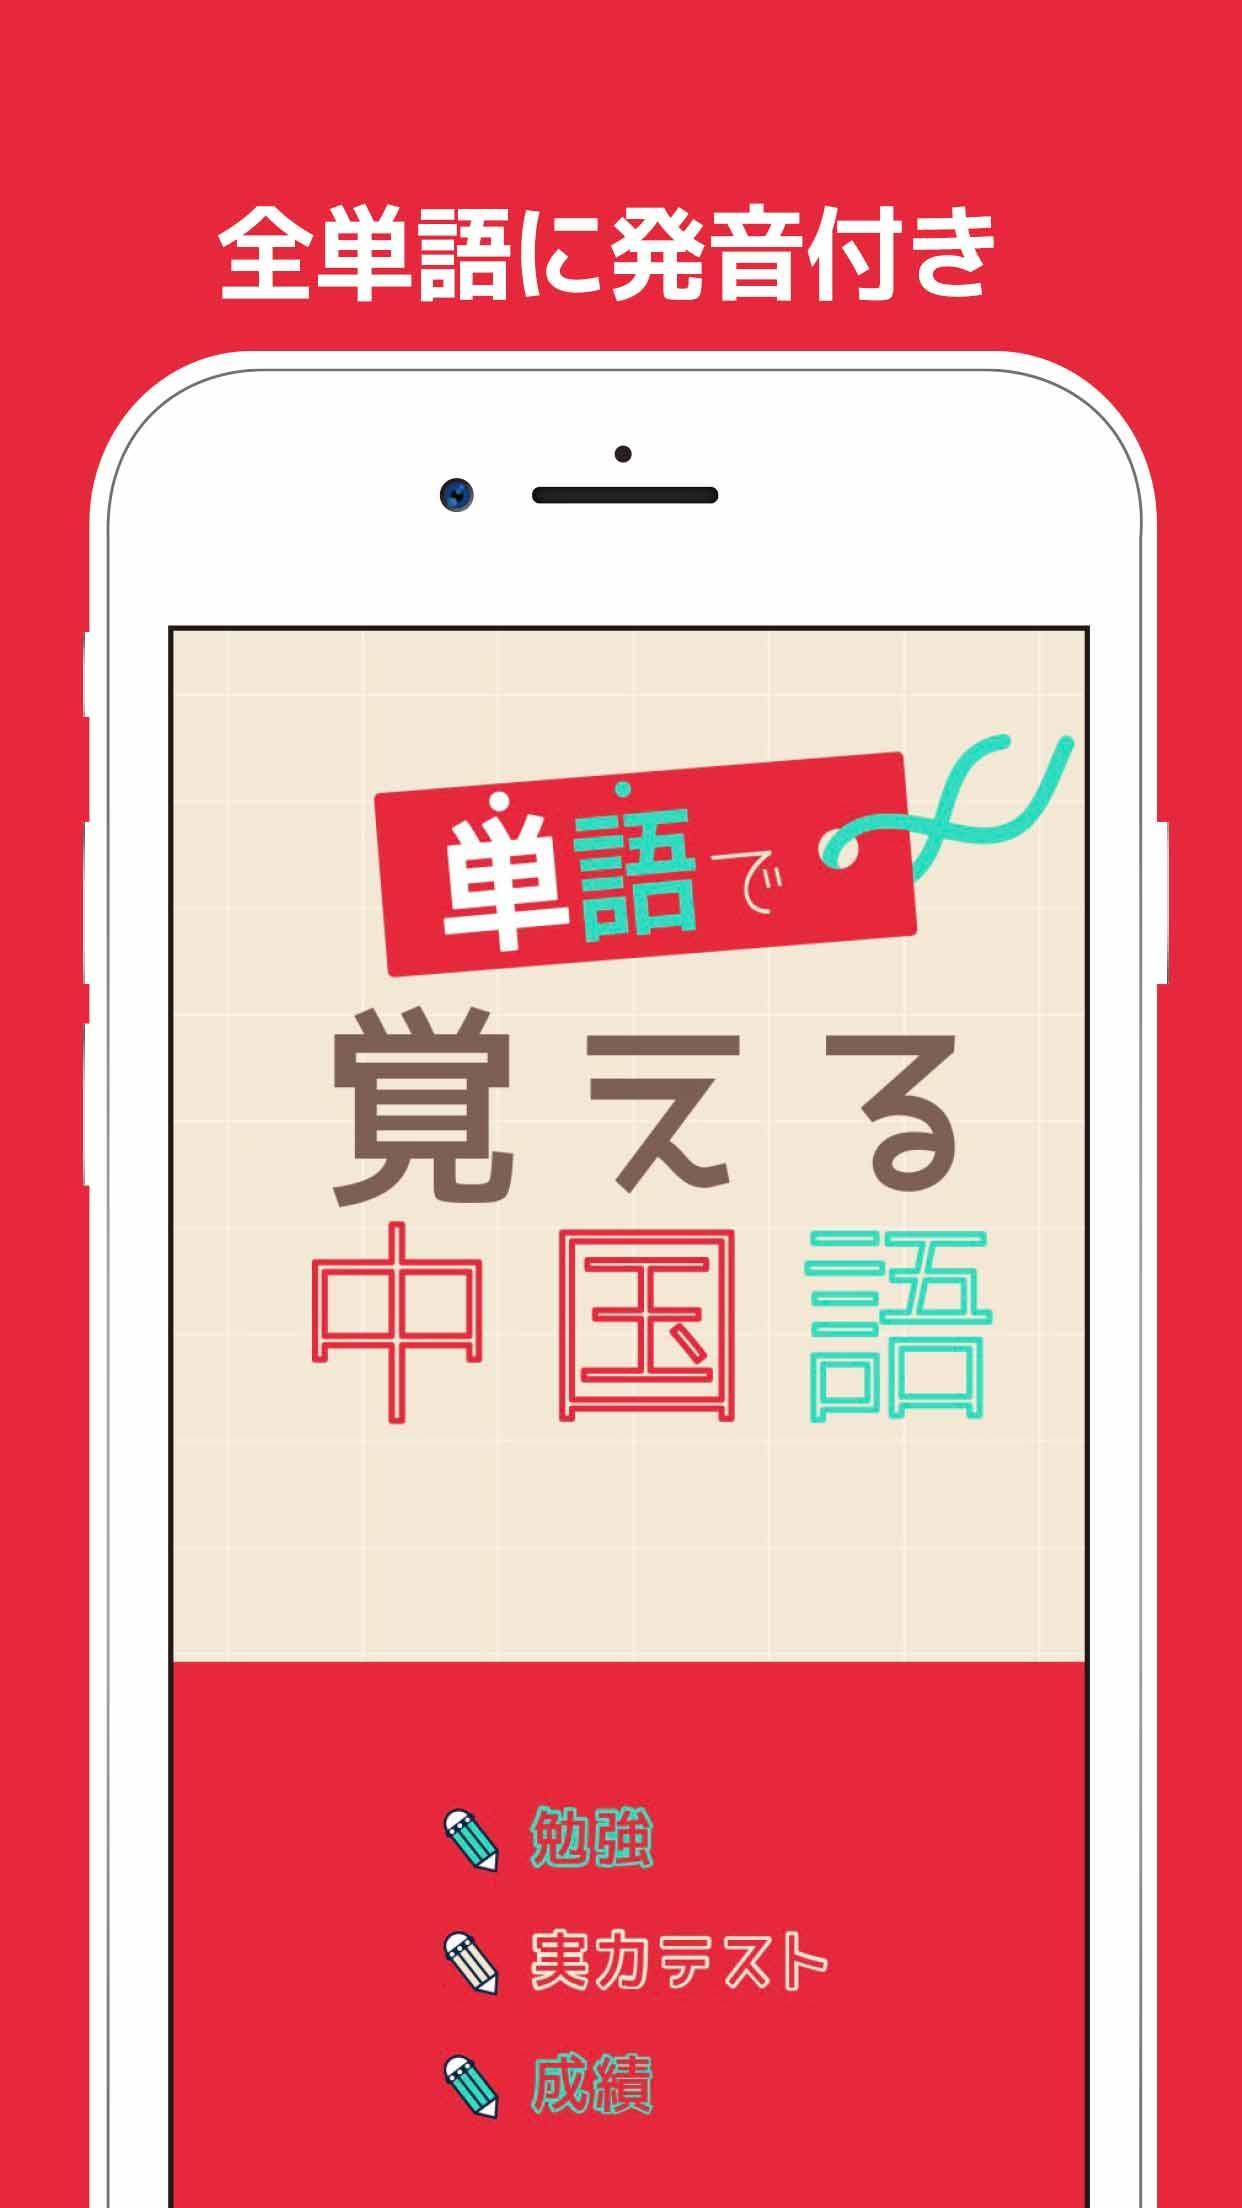 単語で覚える中国語 旅行の会話で使える単語帳アプリ 無料で検定試験などの勉強も出来るのでおすすめ For Android Apk Download